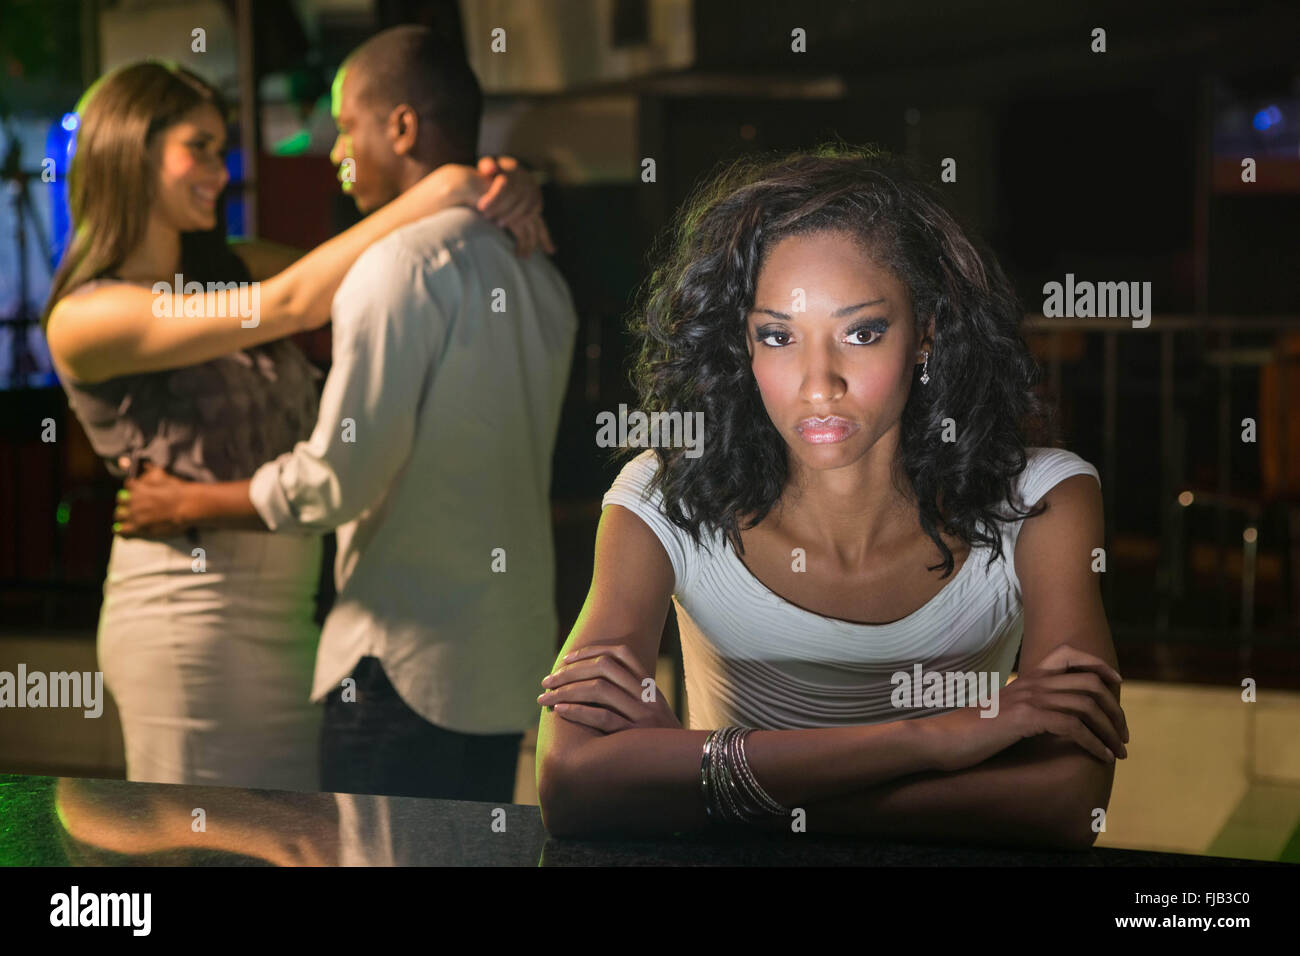 Unglückliche Frau sitzt am bar-Theke und Paare tanzen hinter ihr Stockfoto